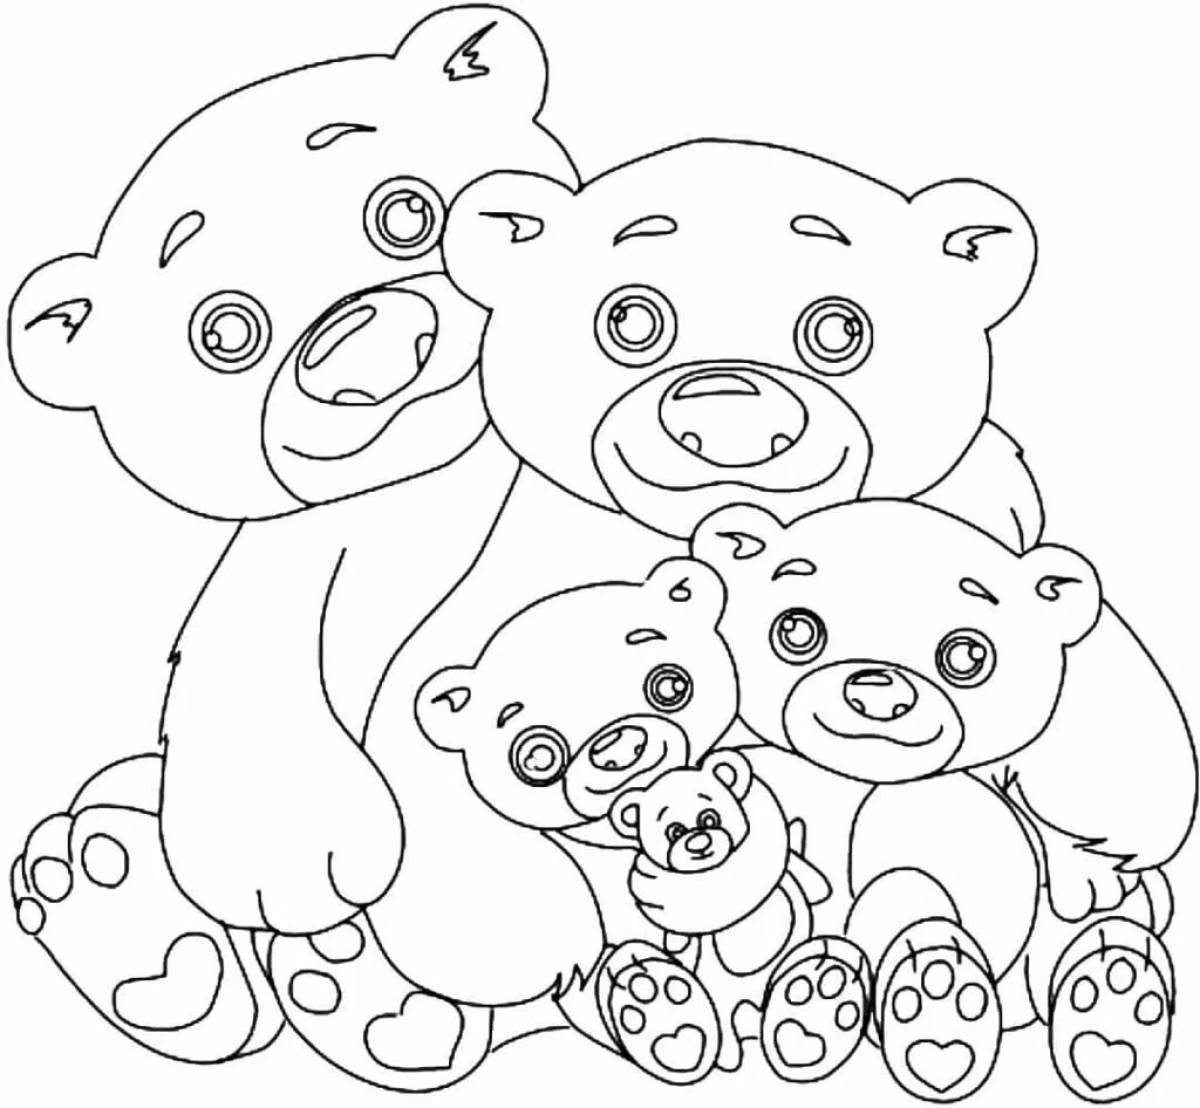 Bear family #7